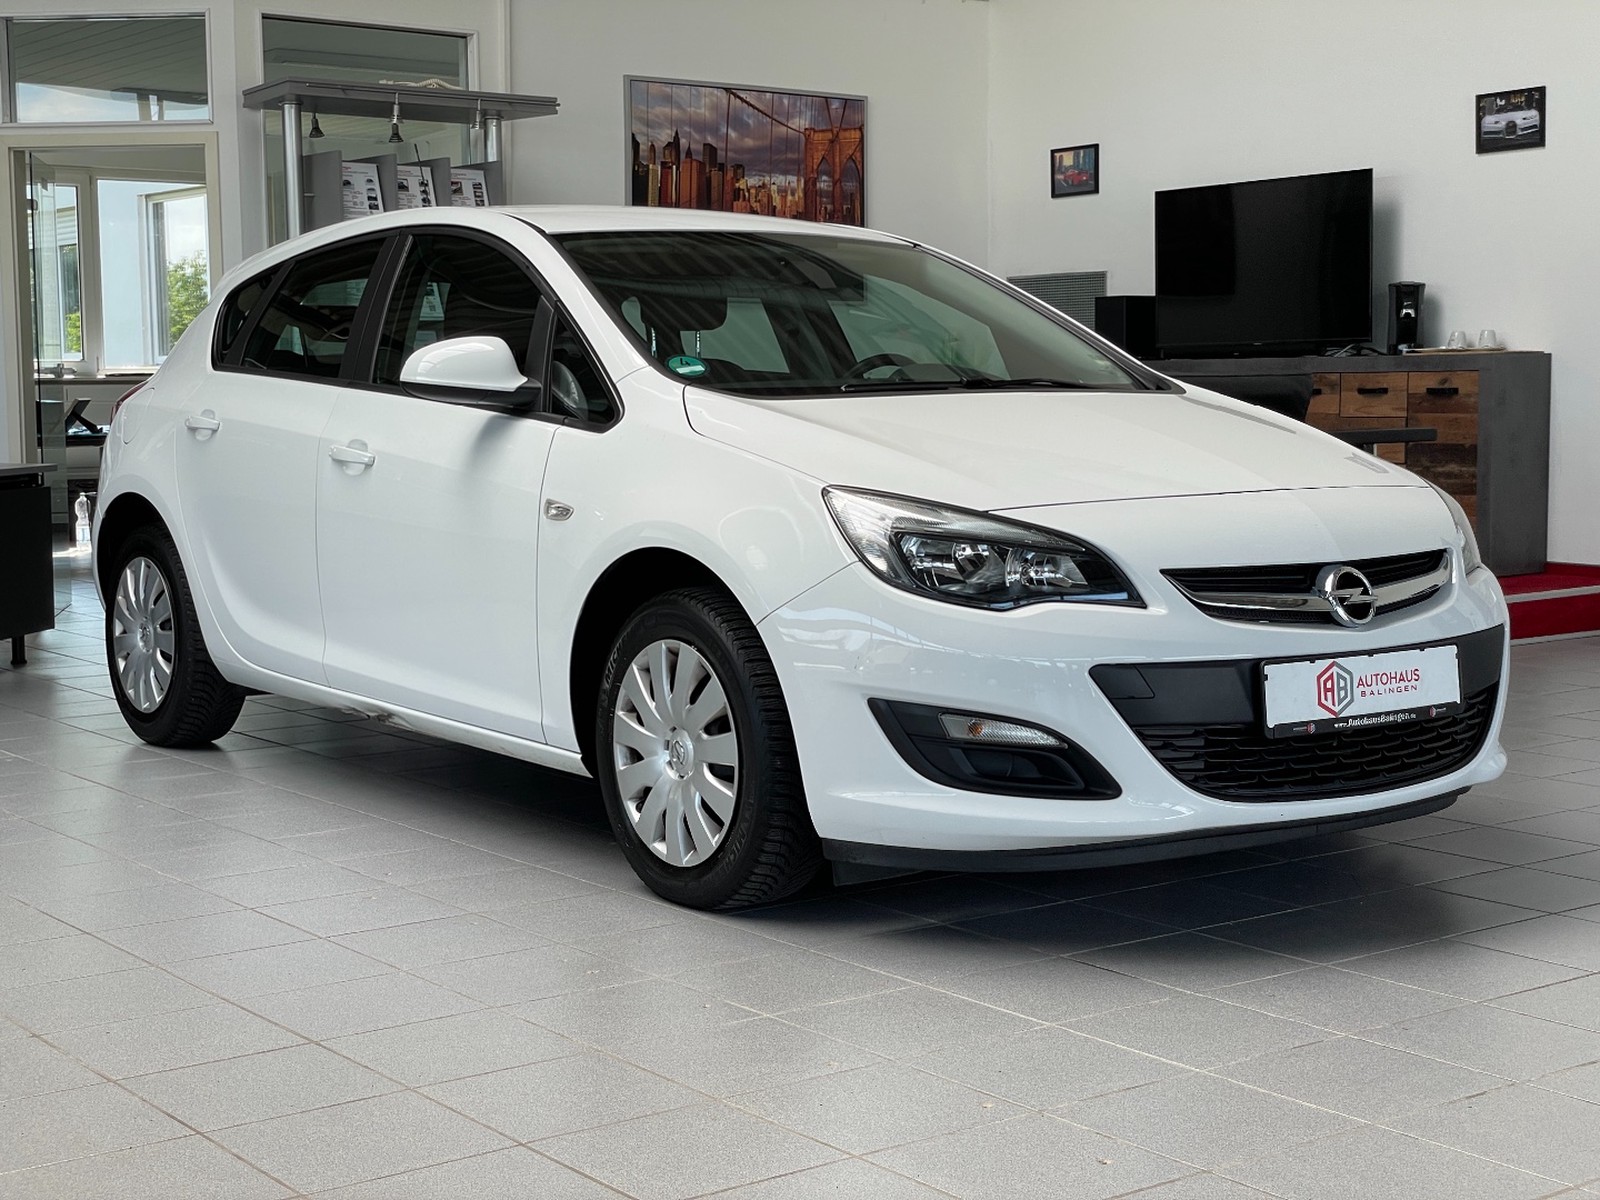 Gebraucht-Tour Opel Astra J